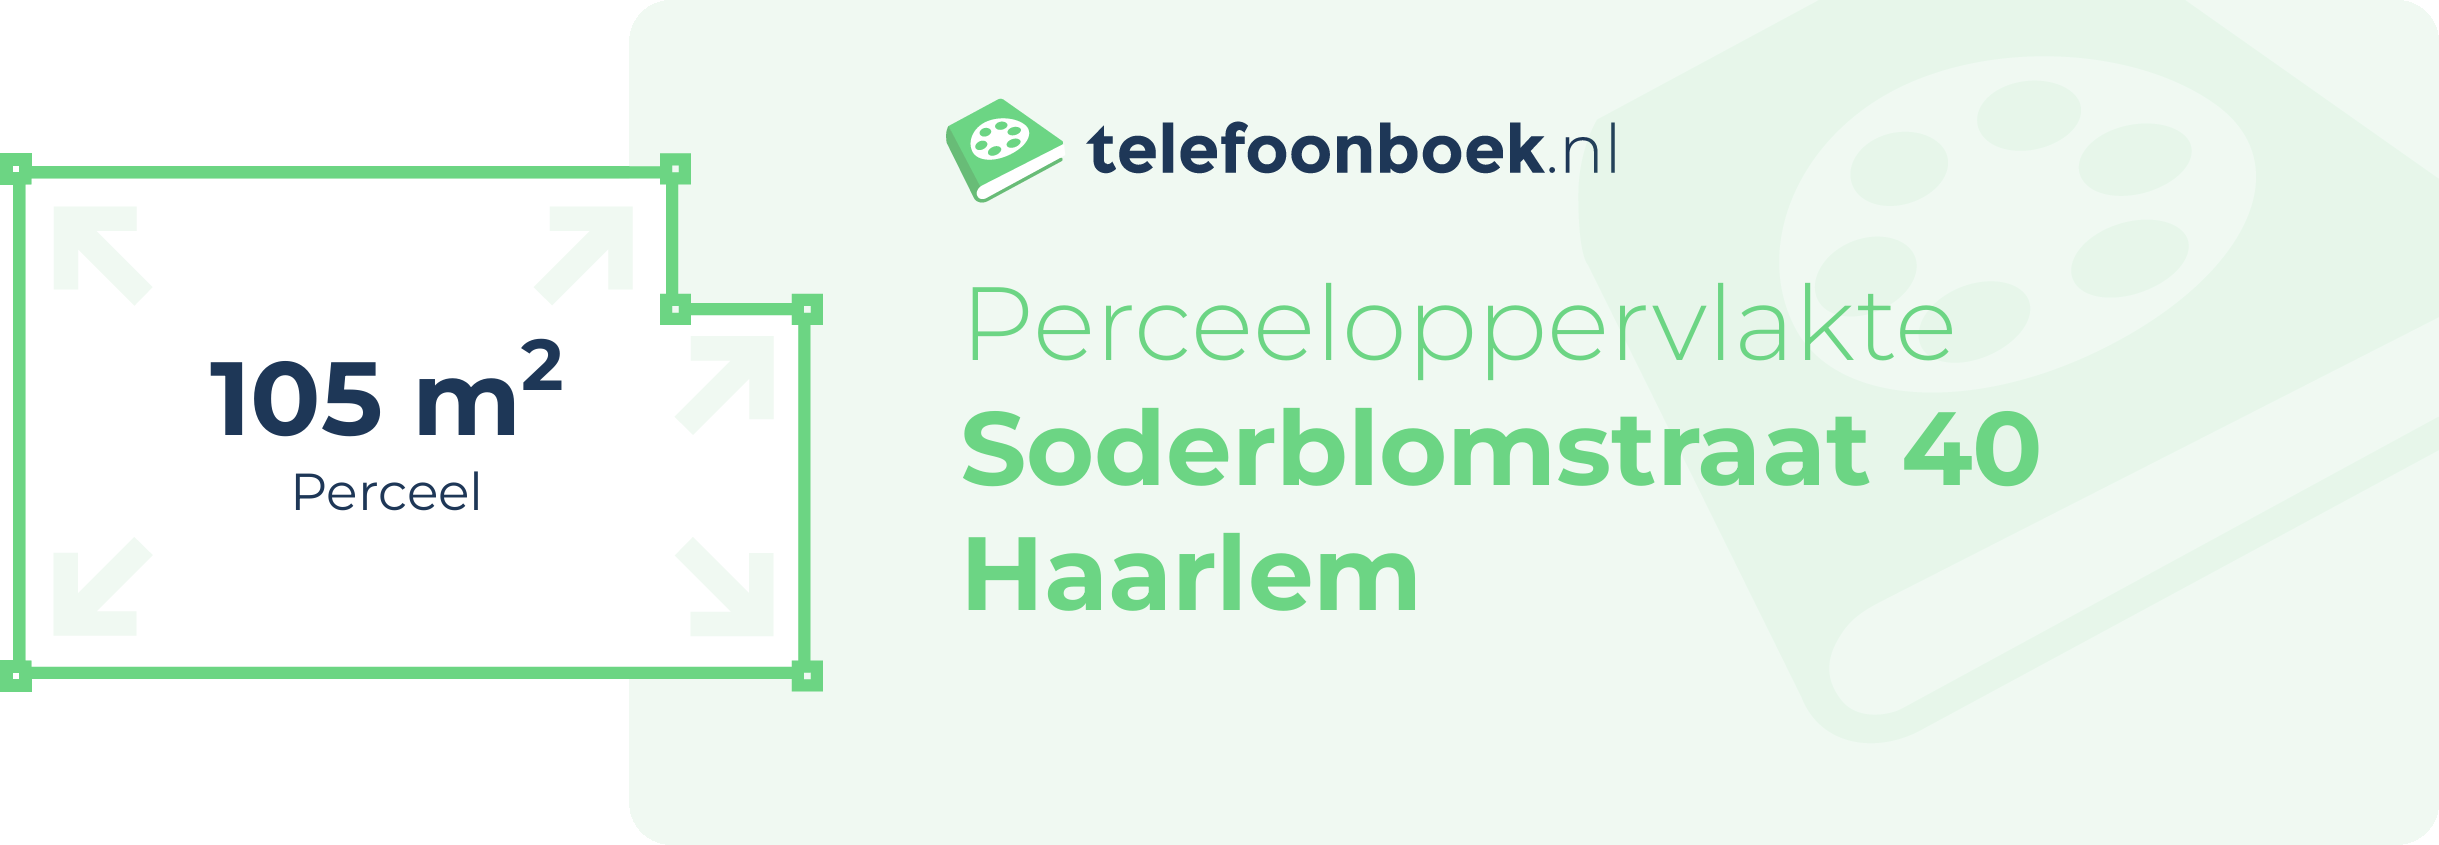 Perceeloppervlakte Soderblomstraat 40 Haarlem